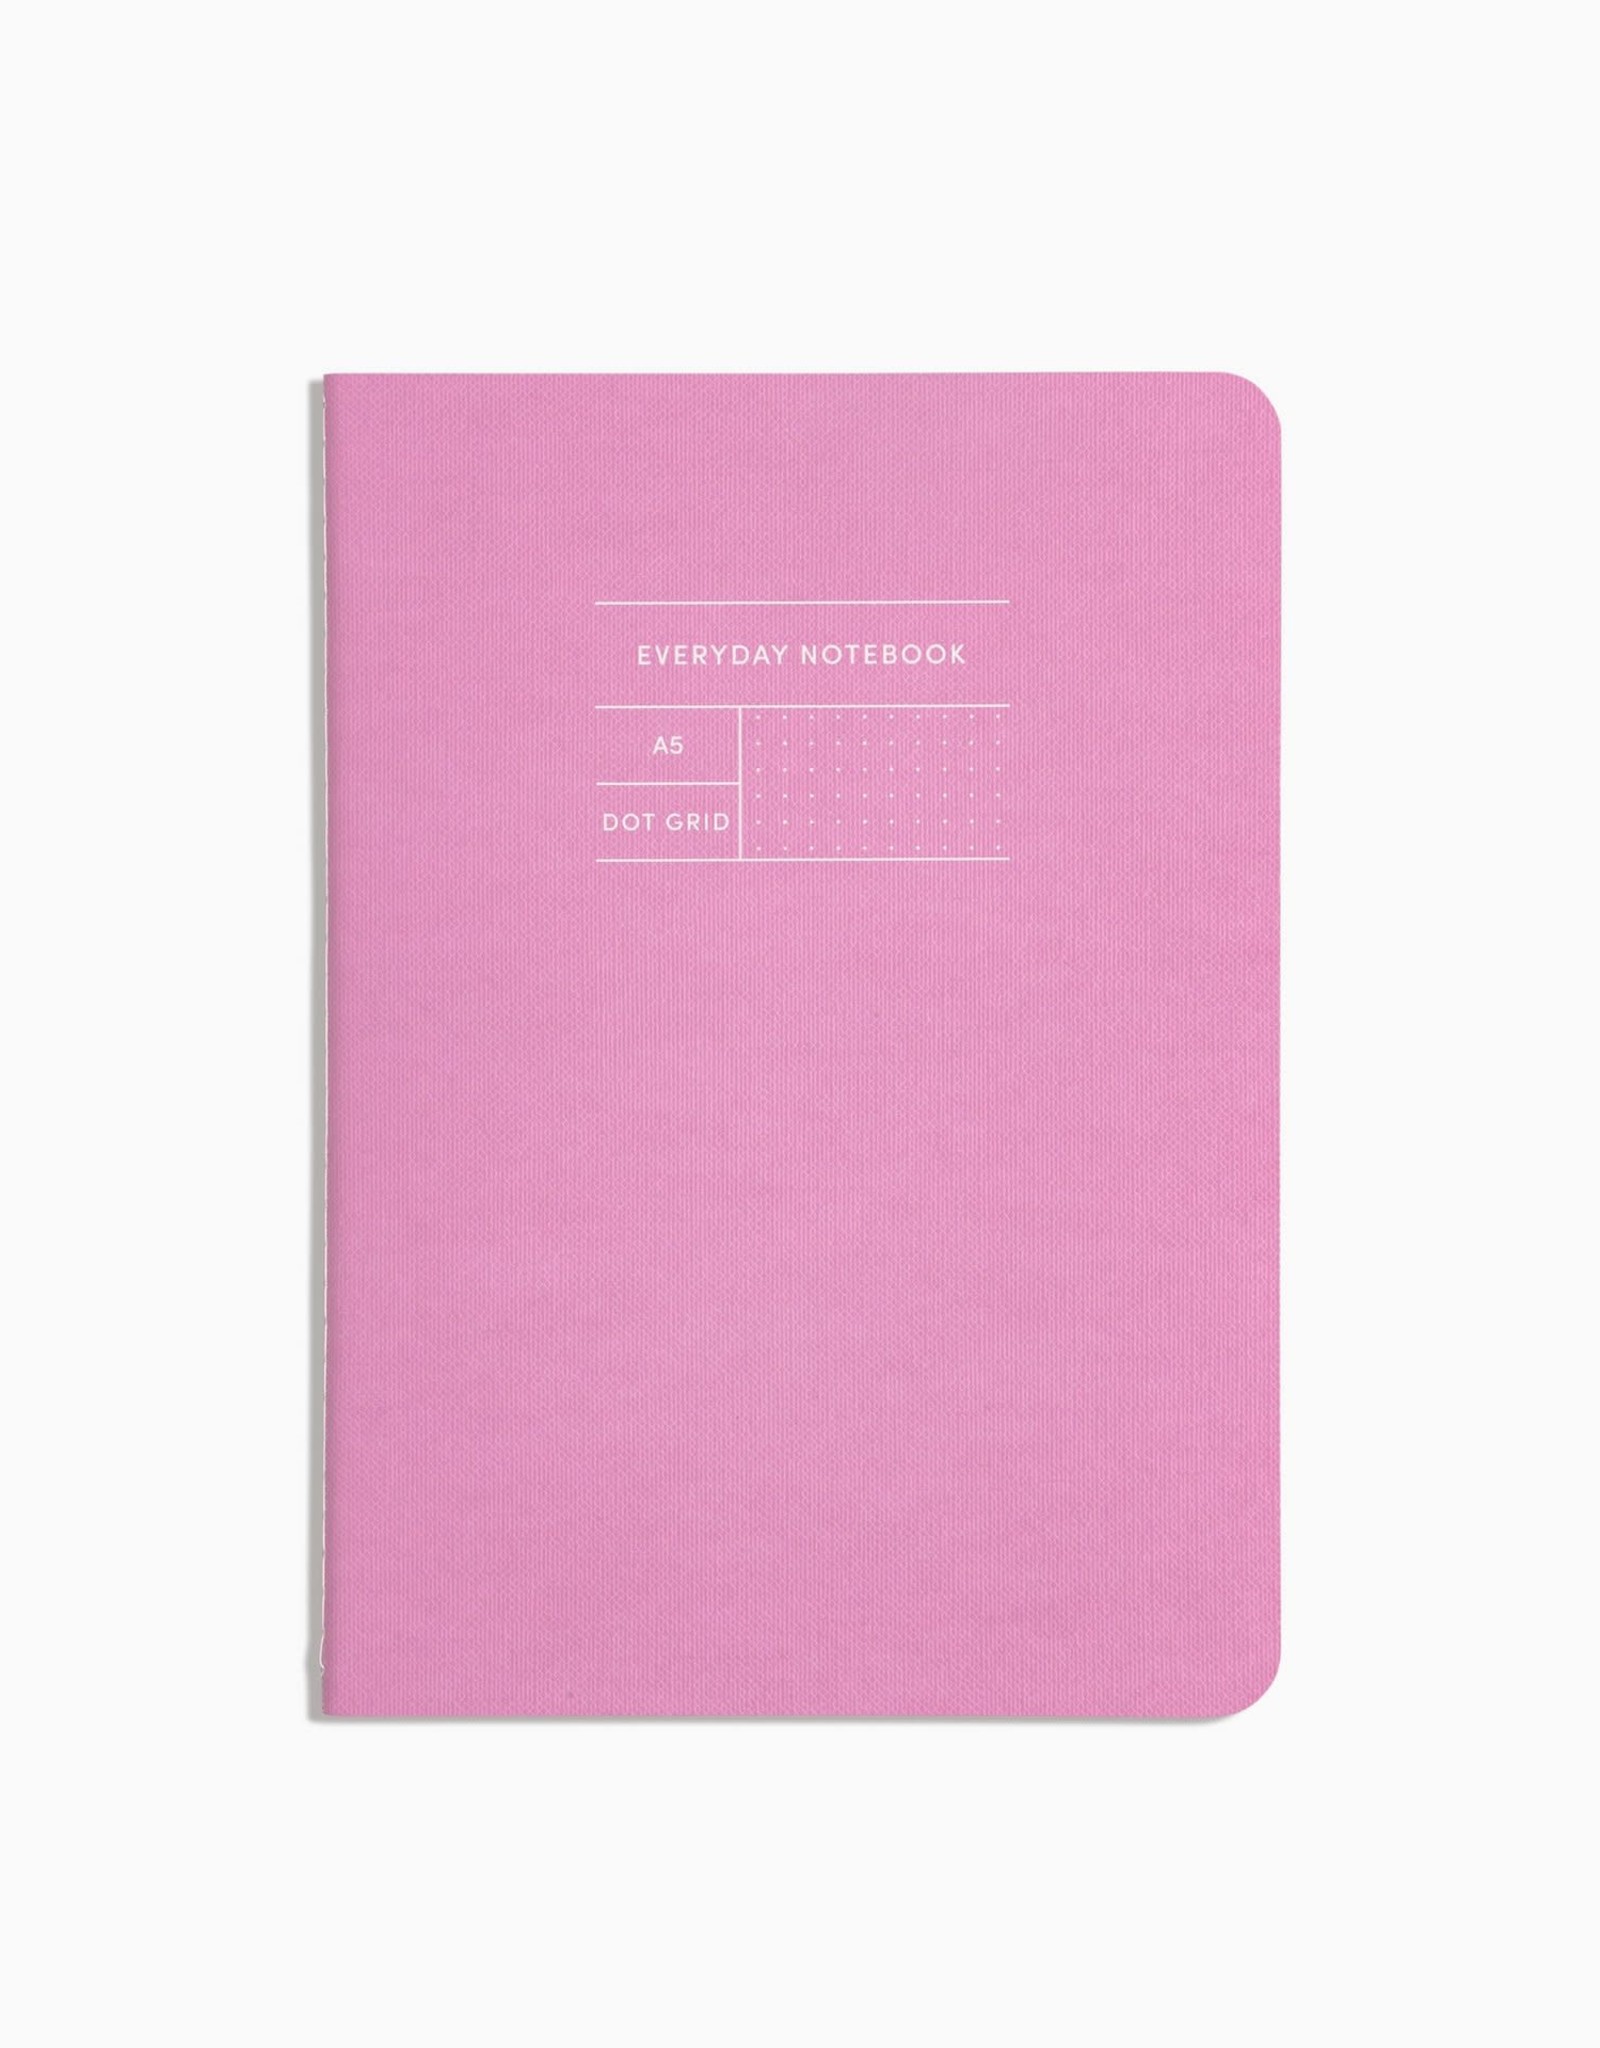 Poketo Everyday Notebook